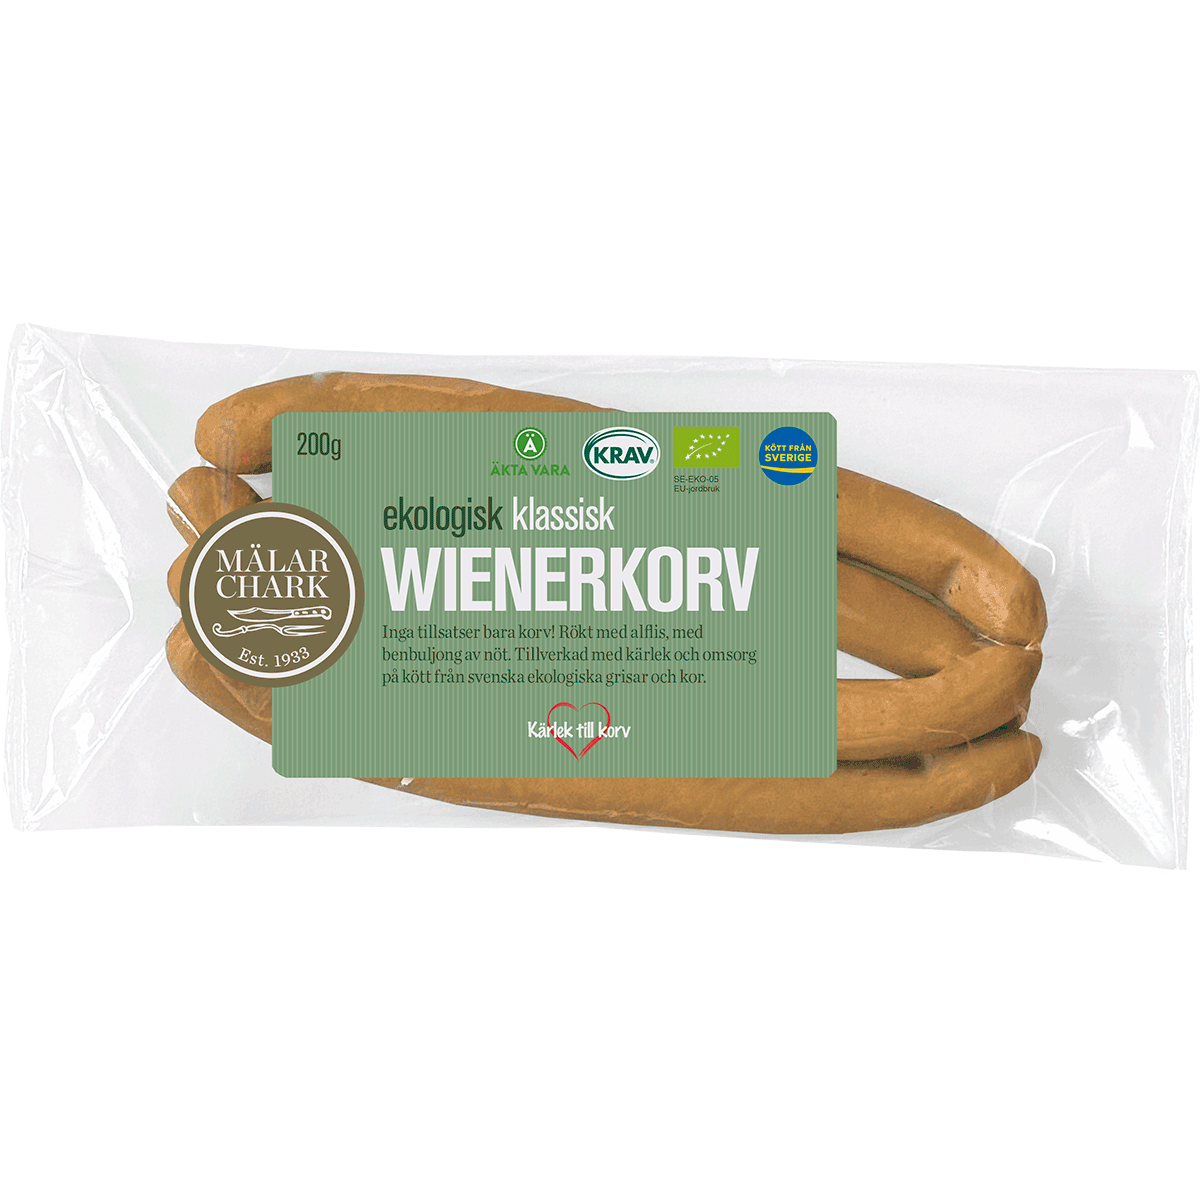 Mälarchark's Wienerkorv '